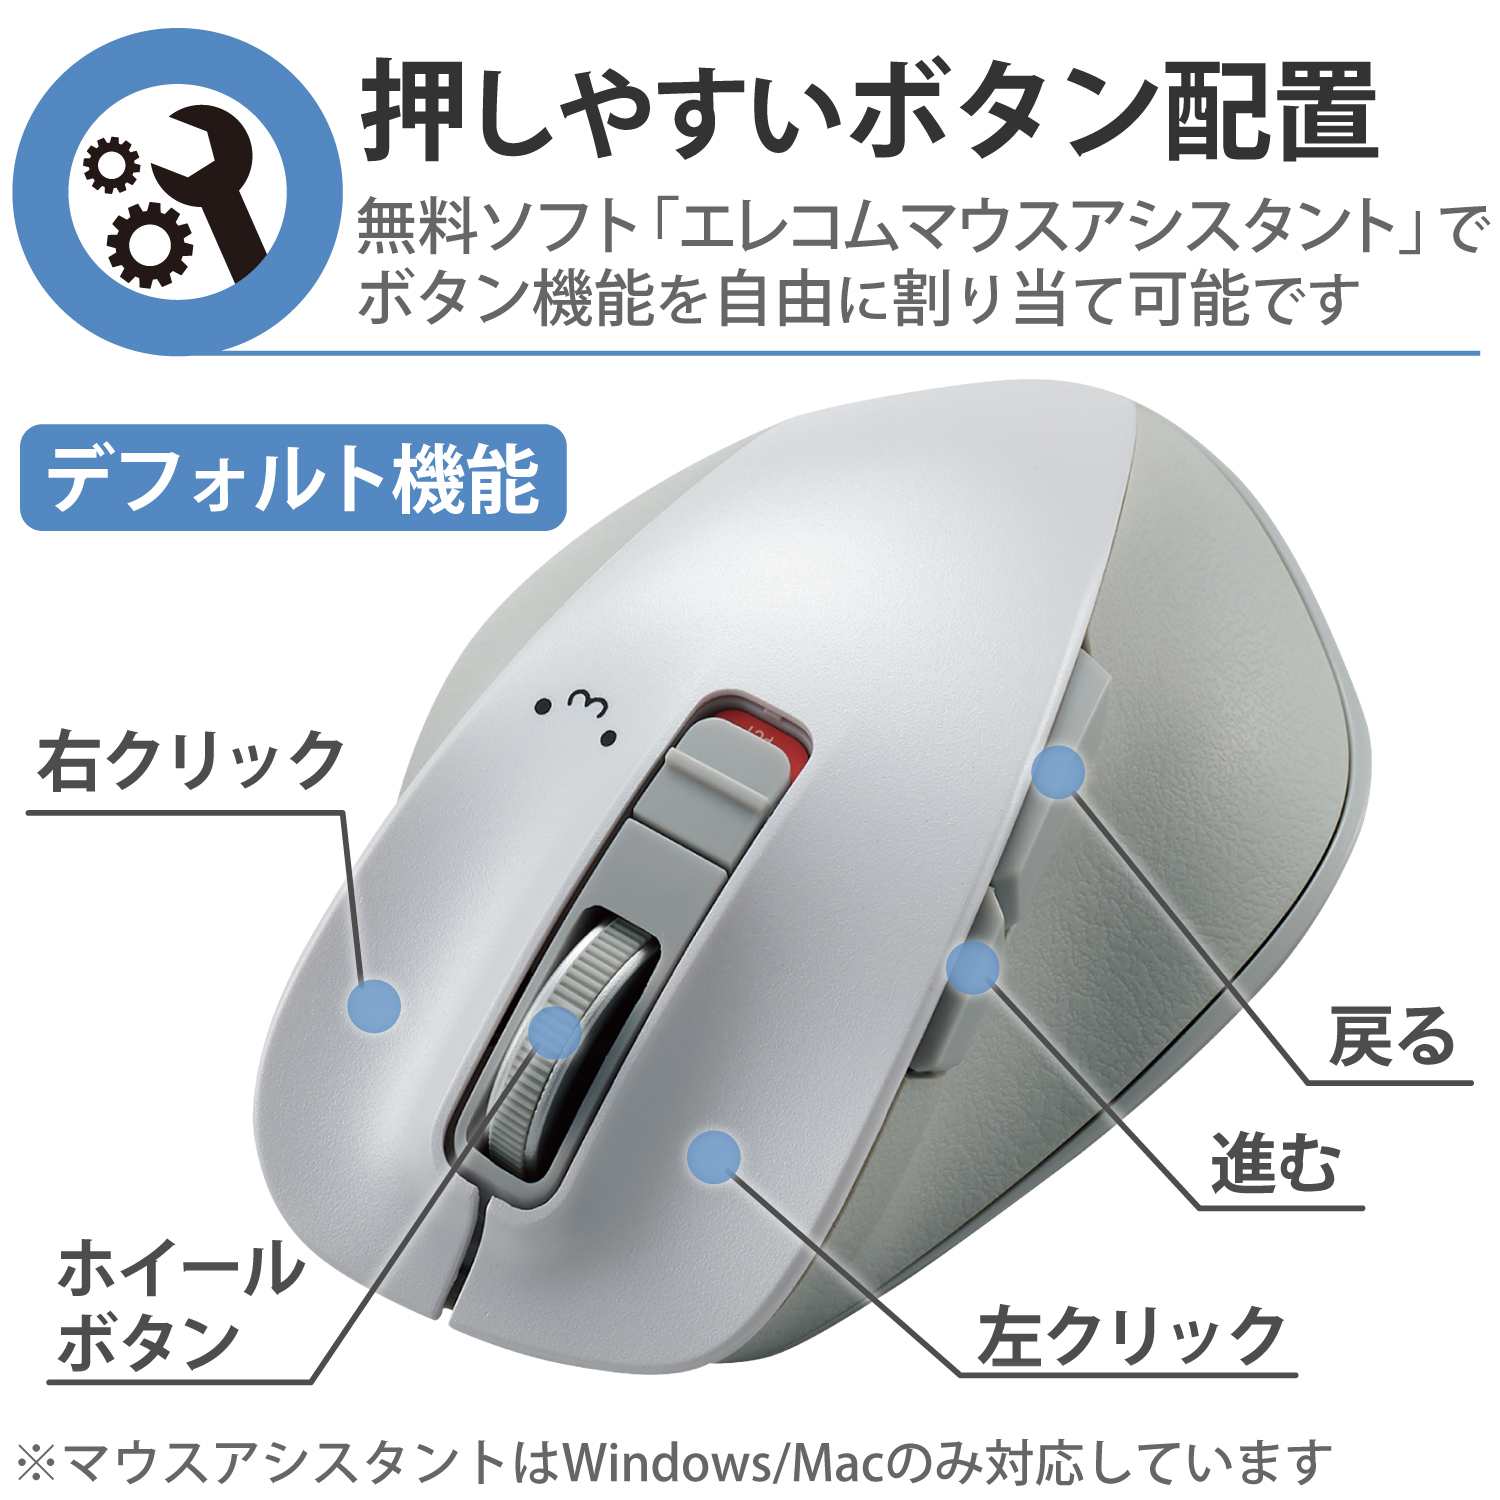 エレコム ワイヤレス マウス Bluetooth 5.0 EX-Gシリーズ 5ボタン静音マウスMサイズ マウス ブルートゥース 5ボタン  Mサイズ 握りの極み 静音設計 ホワイトフェイス M-XGM15BBSWF/EC エレコムダイレクトショップ